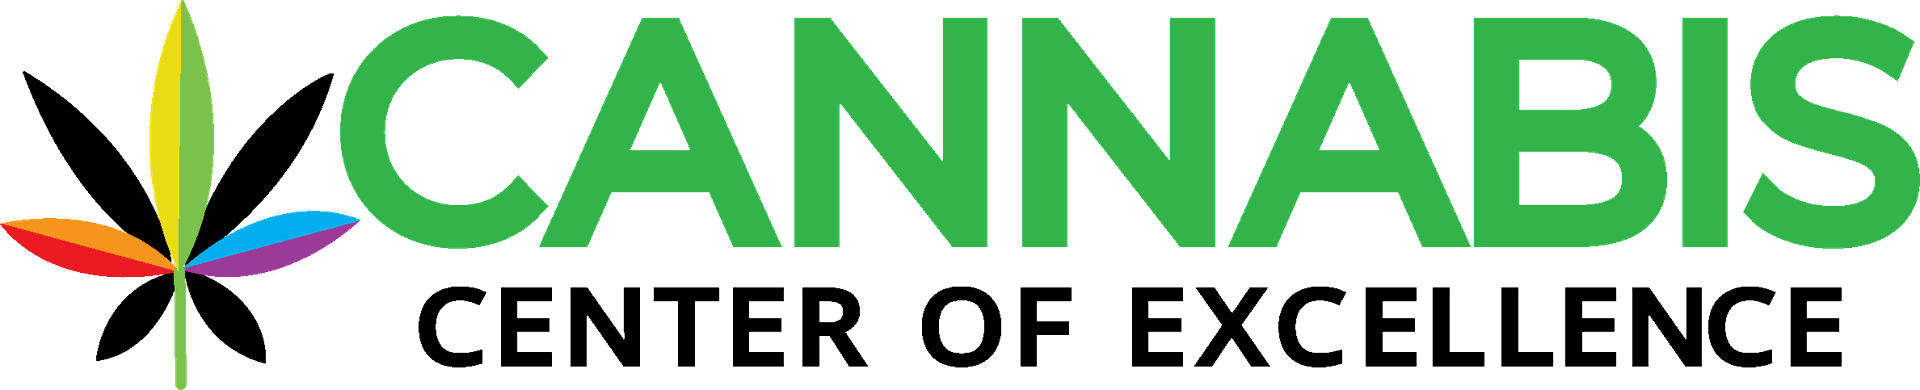 Cannabis Center of Excellence Logo.